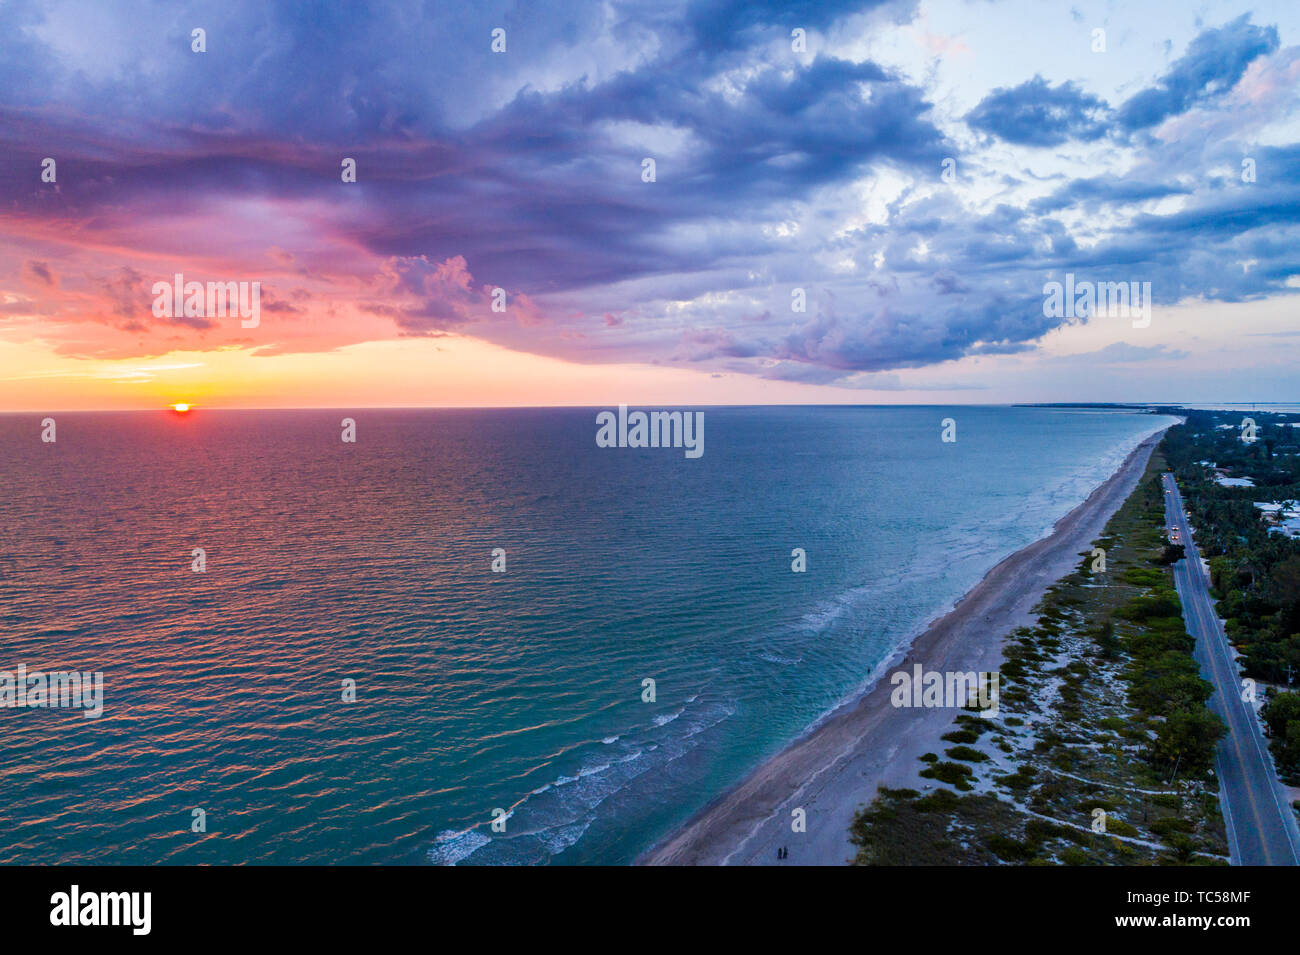 Captiva Island Florida, Golf von Mexiko Strand Strände Sonnenuntergang Wolken Wasser Himmel, Luftaufnahme aus der Vogelperspektive oben, Besucher reisen Reise Tour touri Stockfoto